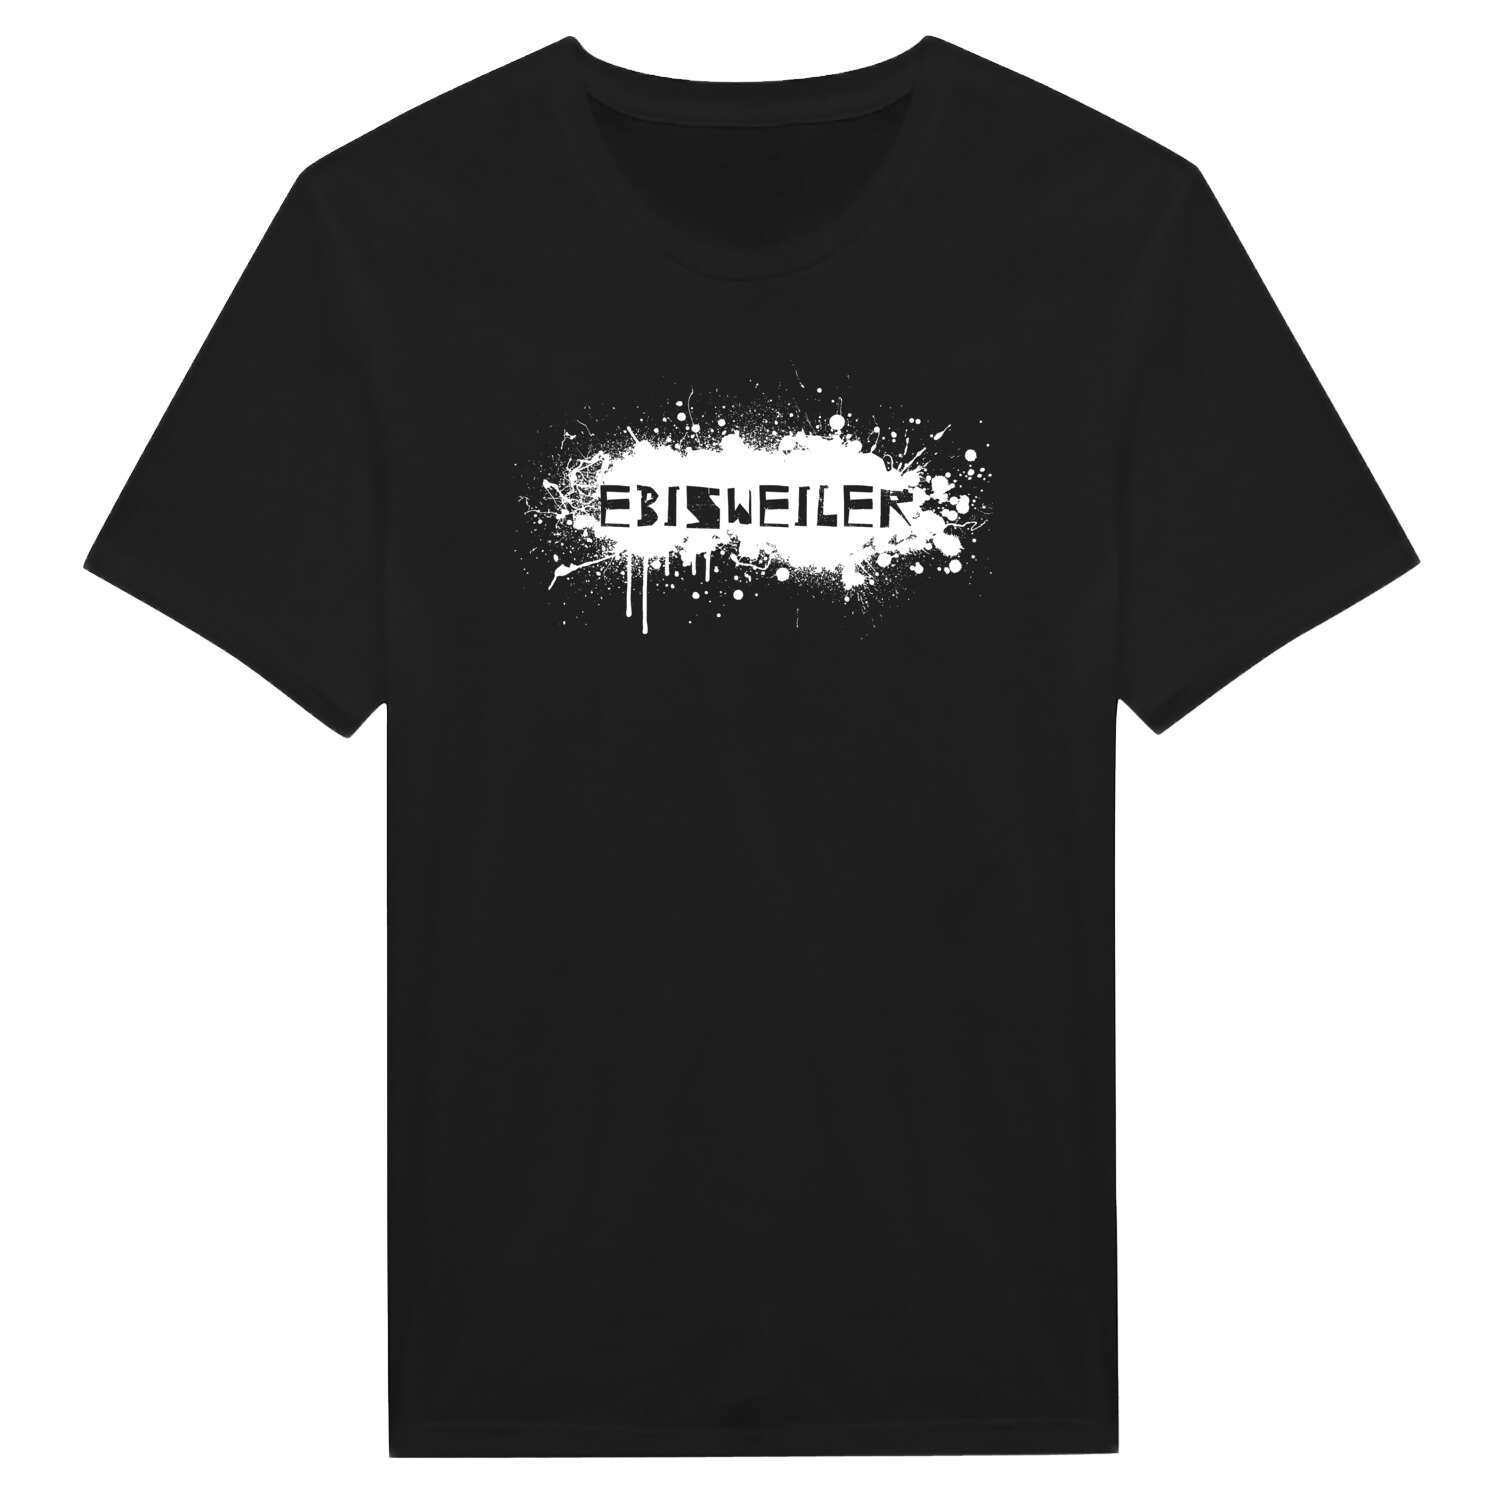 Ebisweiler T-Shirt »Paint Splash Punk«